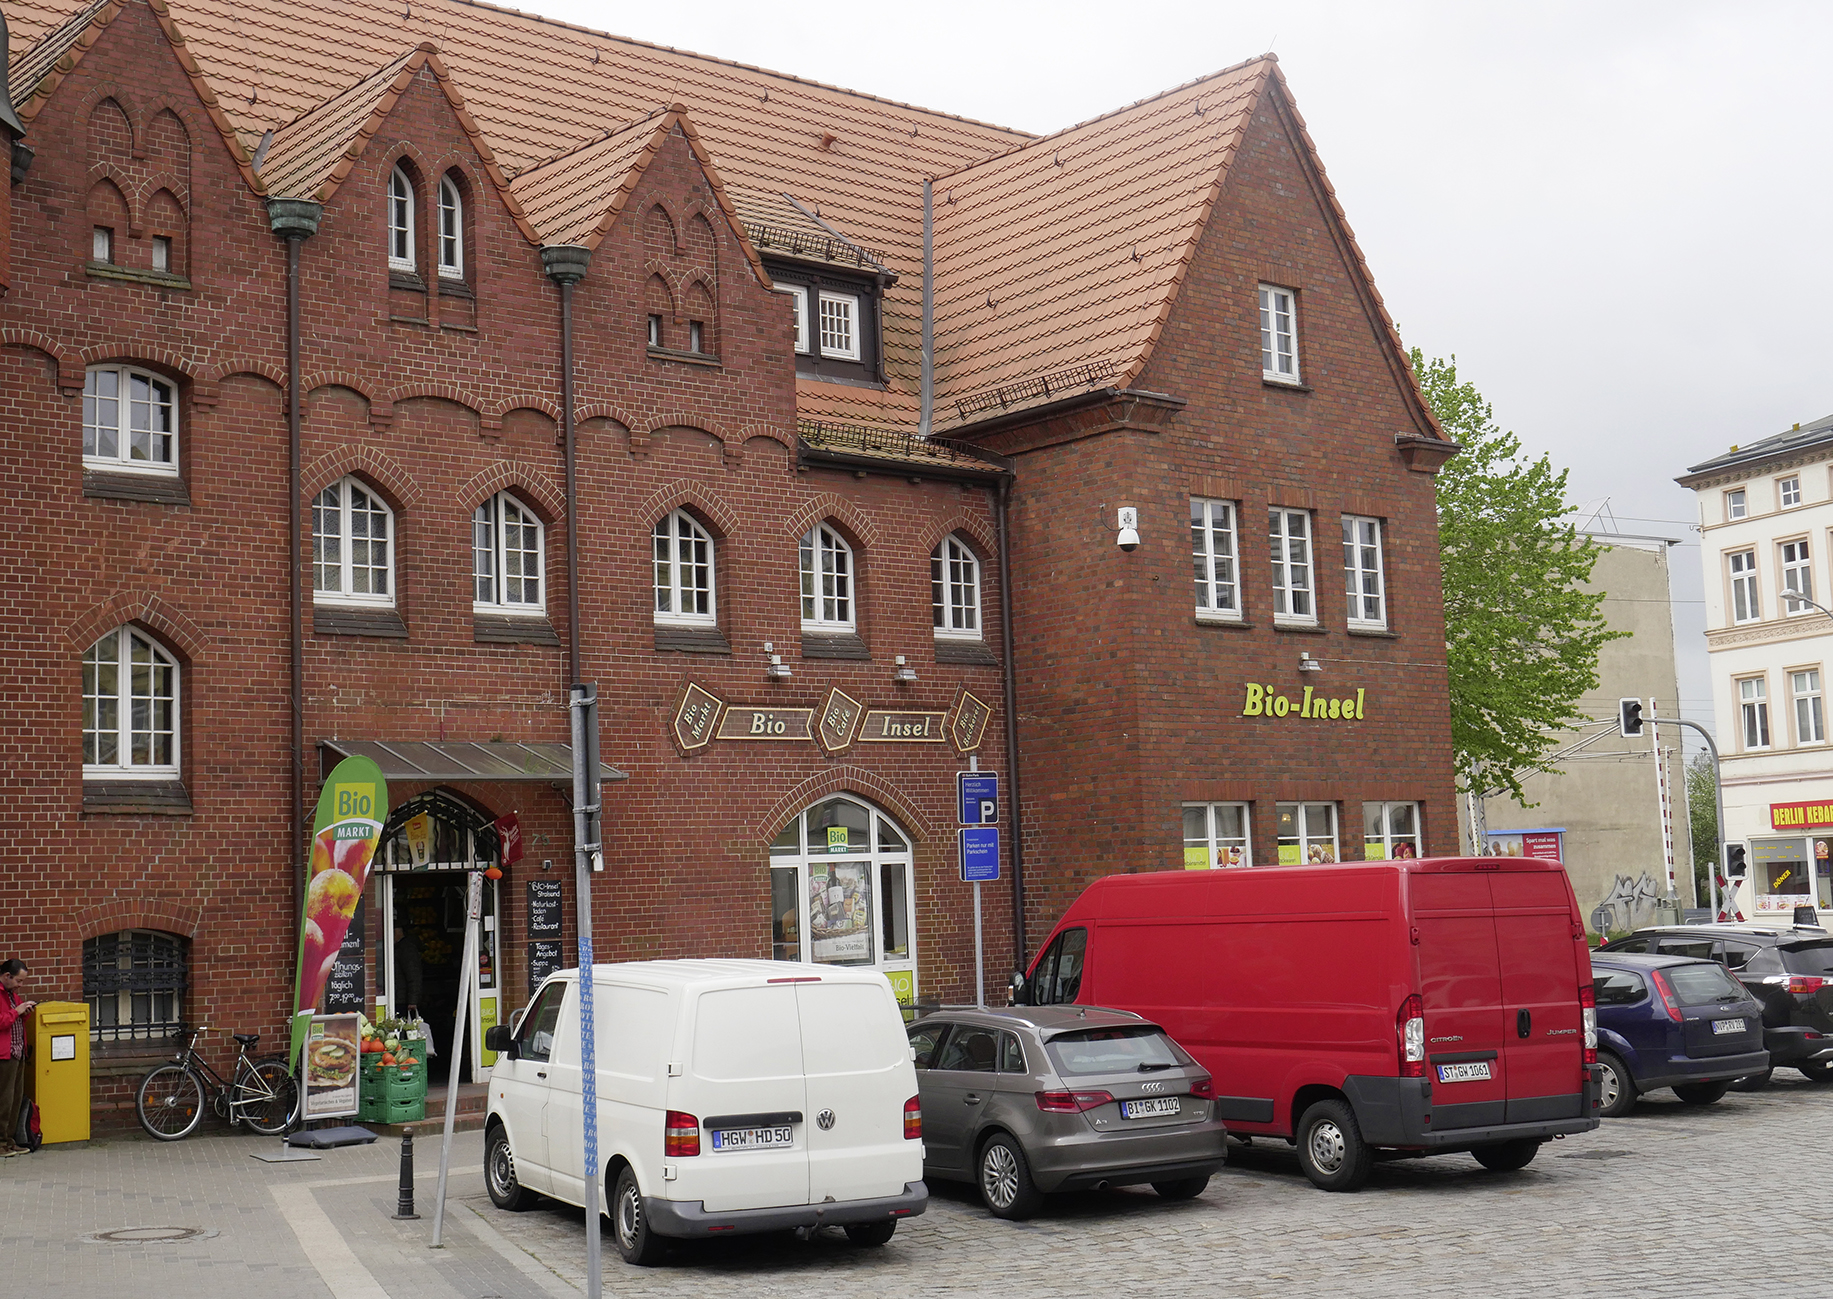 Bahnhofsgebäude Stralsund, Eingang Bio-Insel mit Autos davor